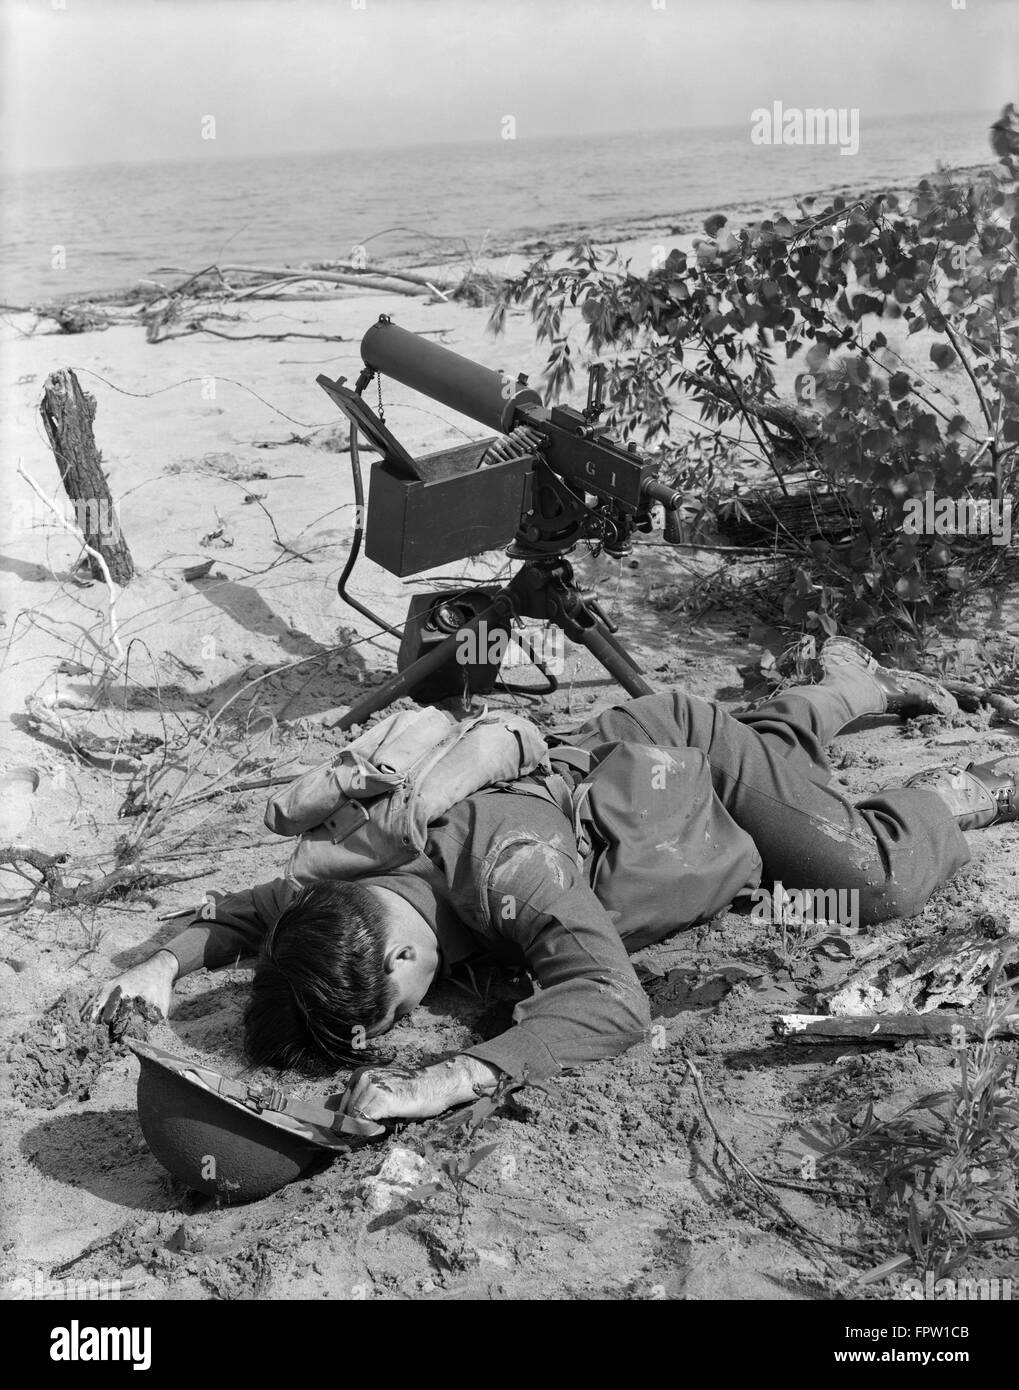 1940s II GUERRA MONDIALE ferito soldato morto disteso a faccia in giù sulla spiaggia dell'oceano accanto alla mitragliatrice Foto Stock